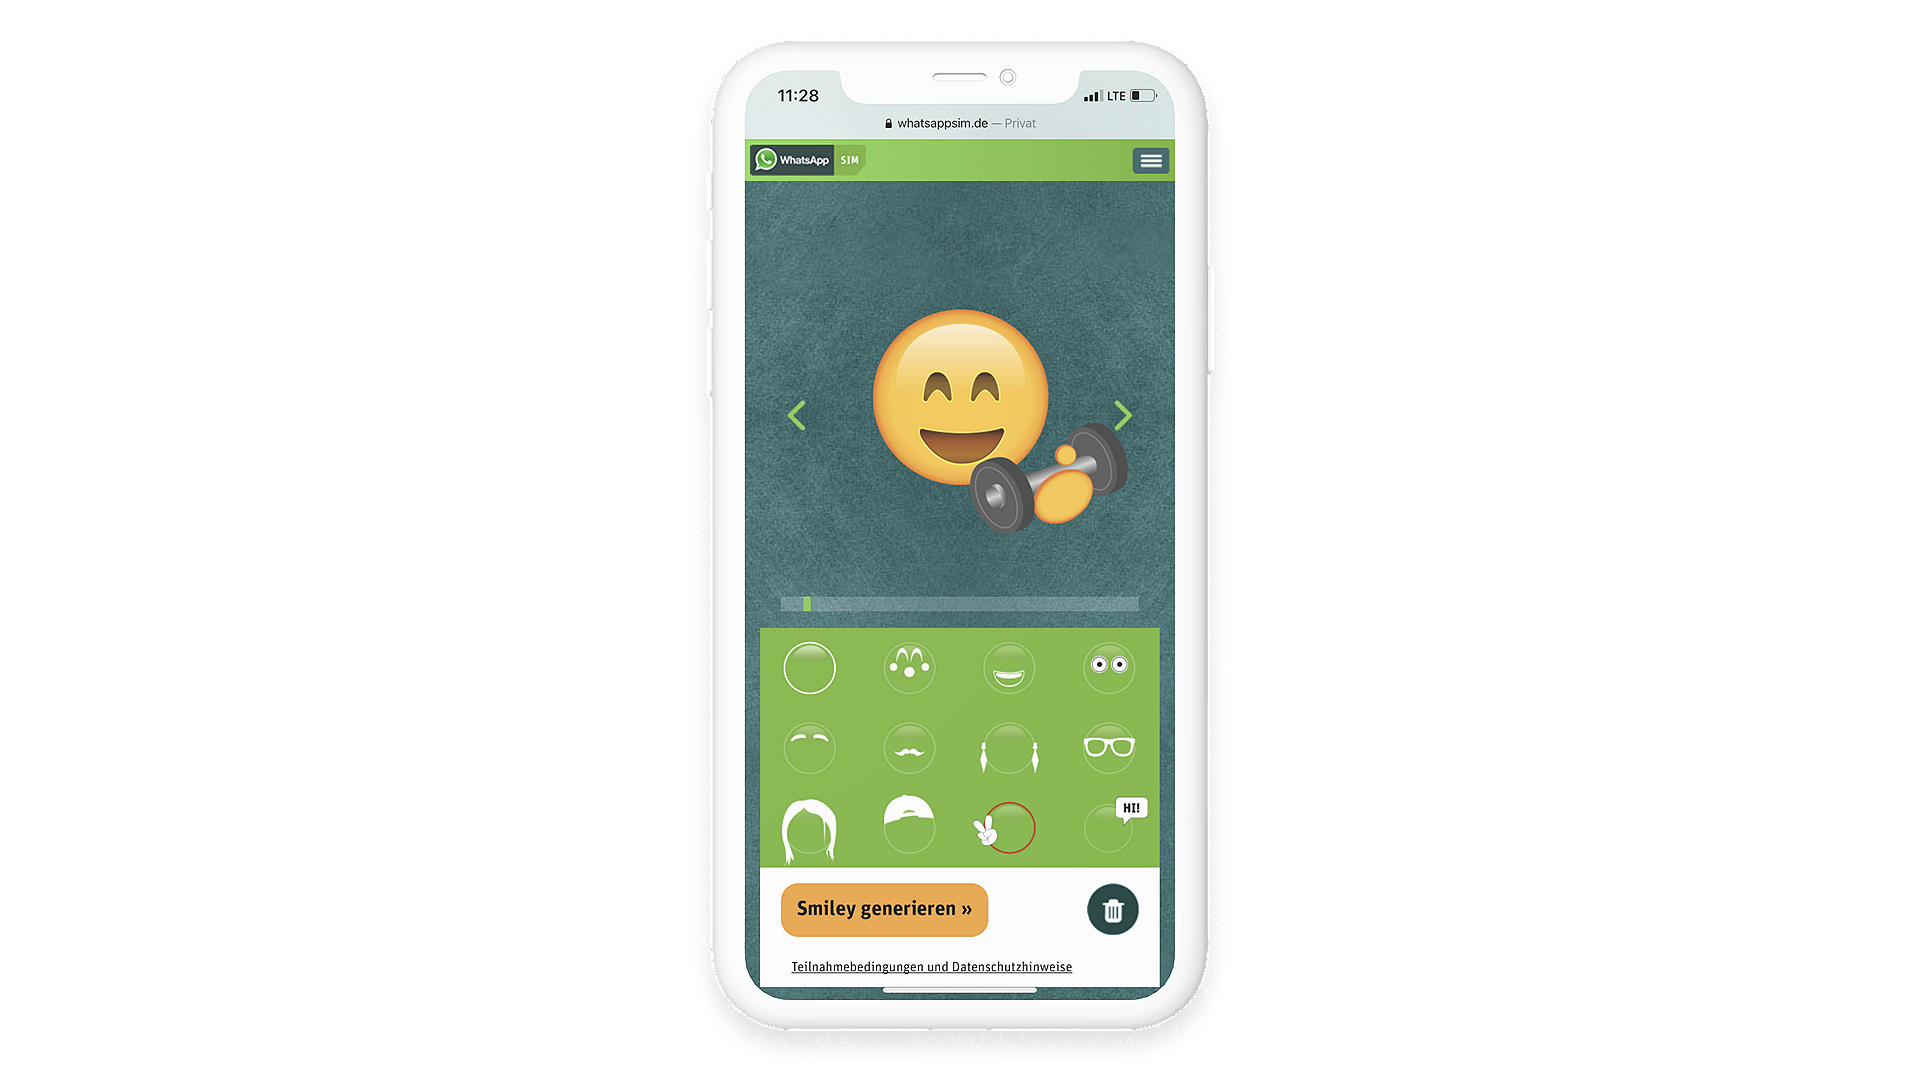 Anwendungs-Anleitung und Beispiel des WhatsApp SIM Smiley-Creator, um eigene Emojis zu erstellen